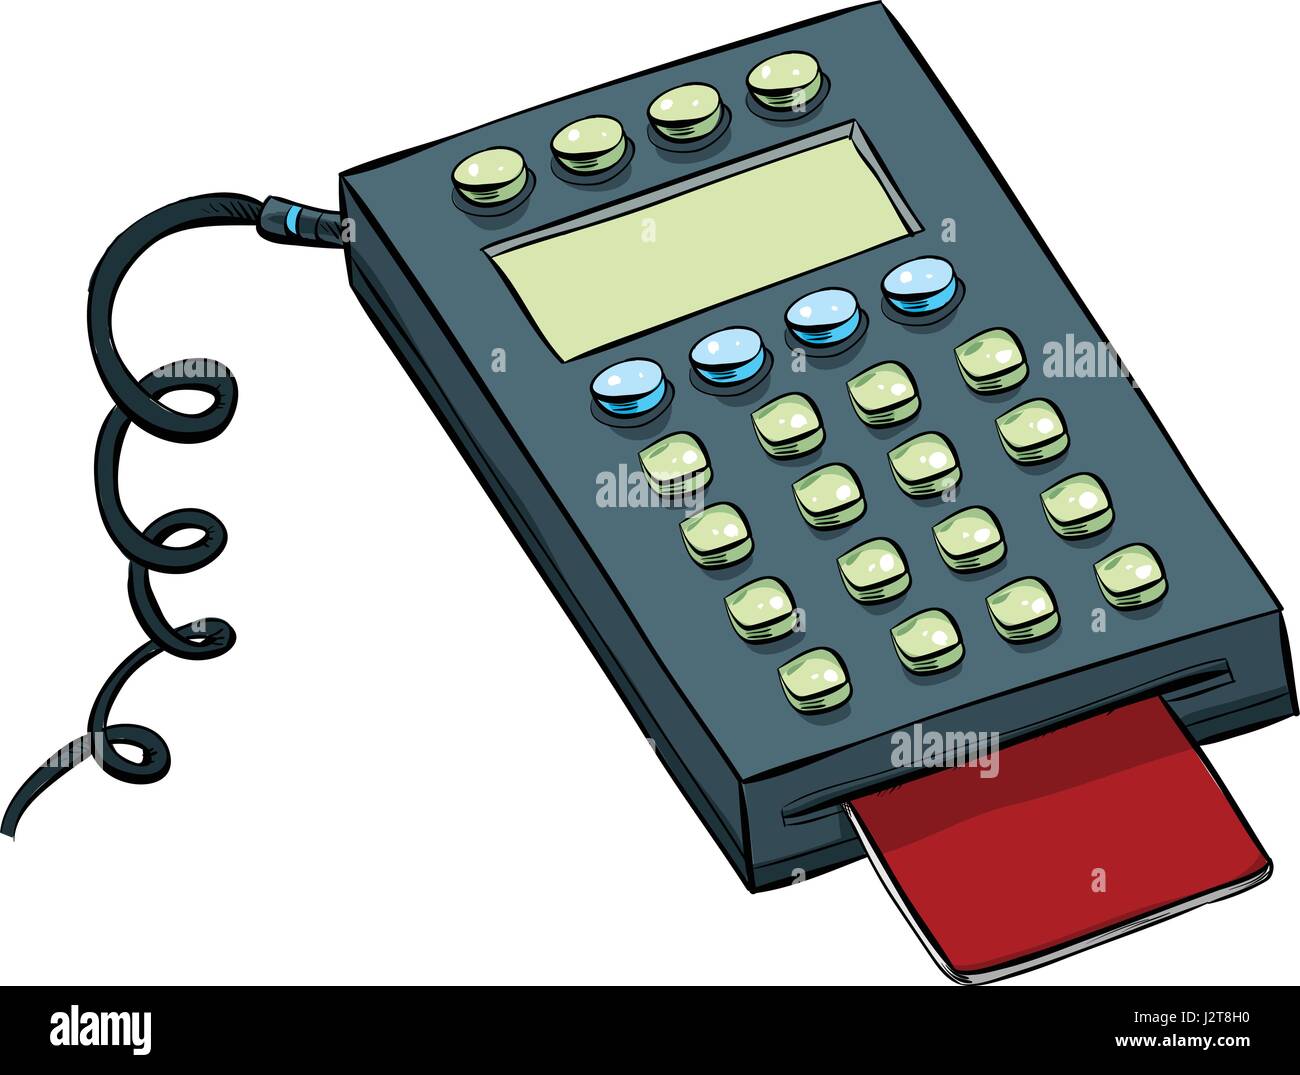 Un dessin de carte de débit avec le clavier de votre téléphone Image  Vectorielle Stock - Alamy